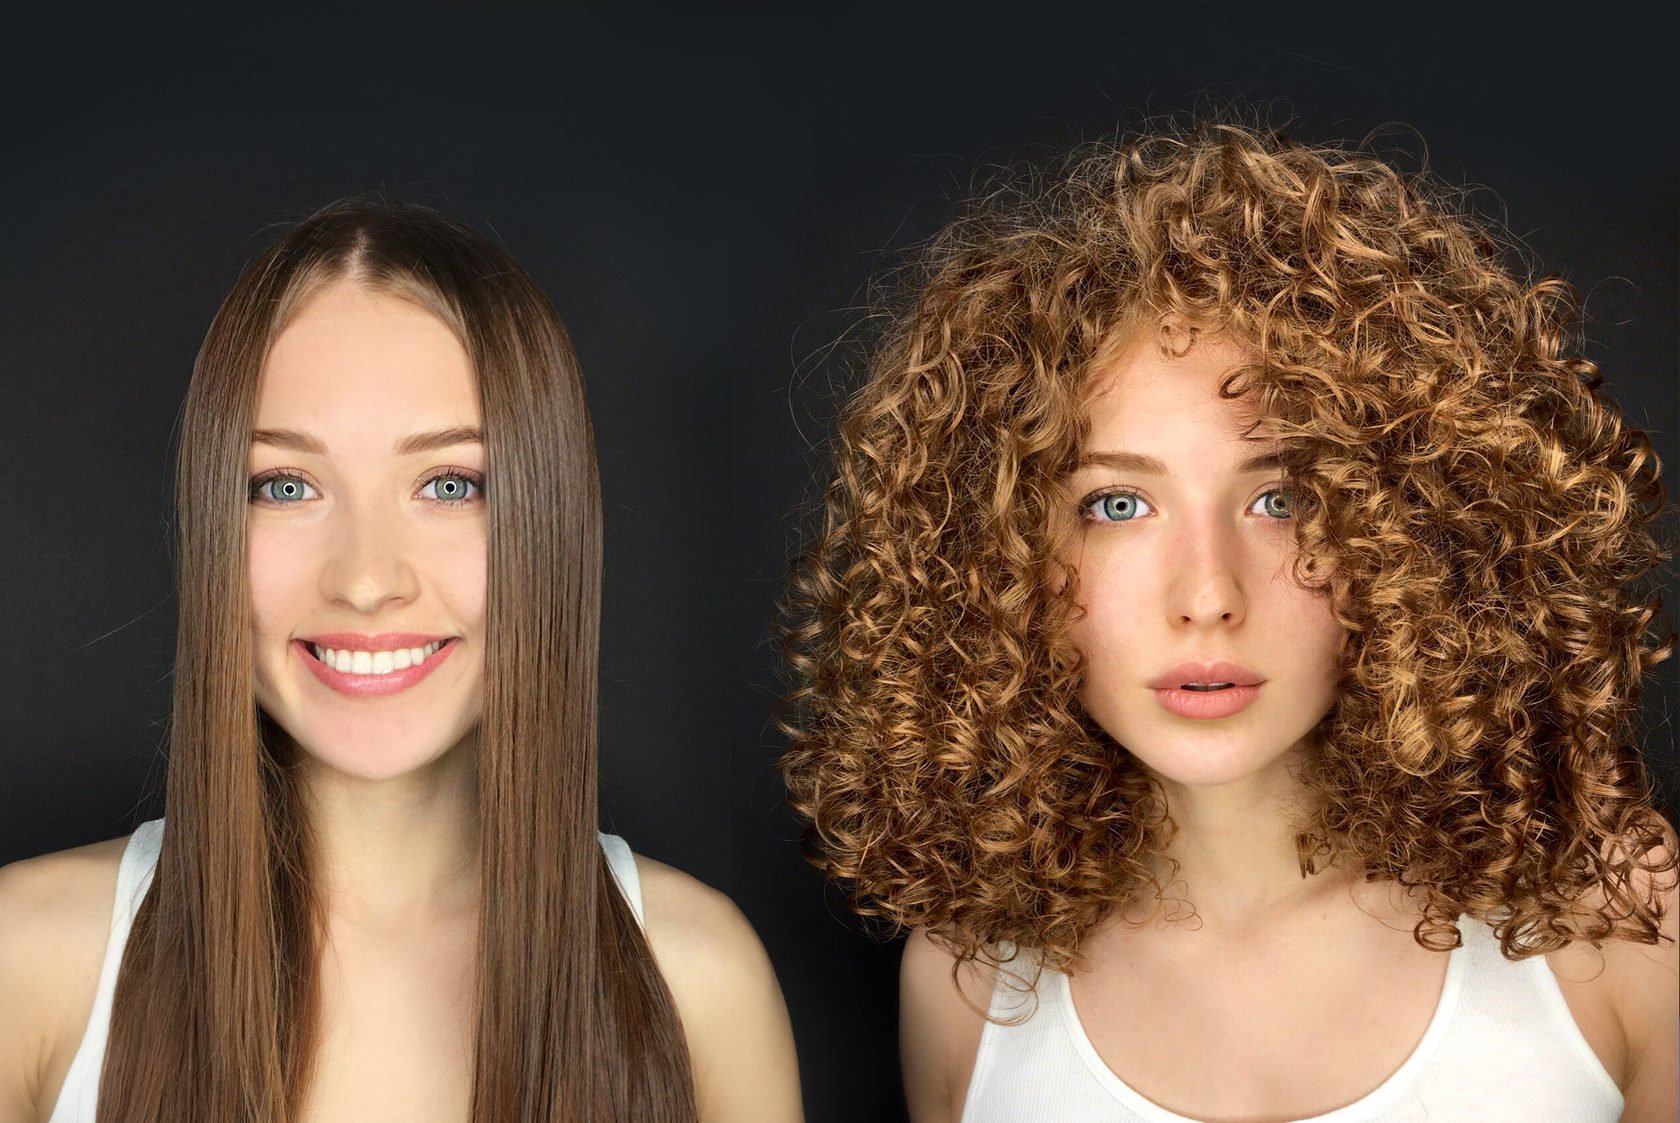 Биозавивка волос: фото “до” и “после” на средние волосы, отзывы, цены